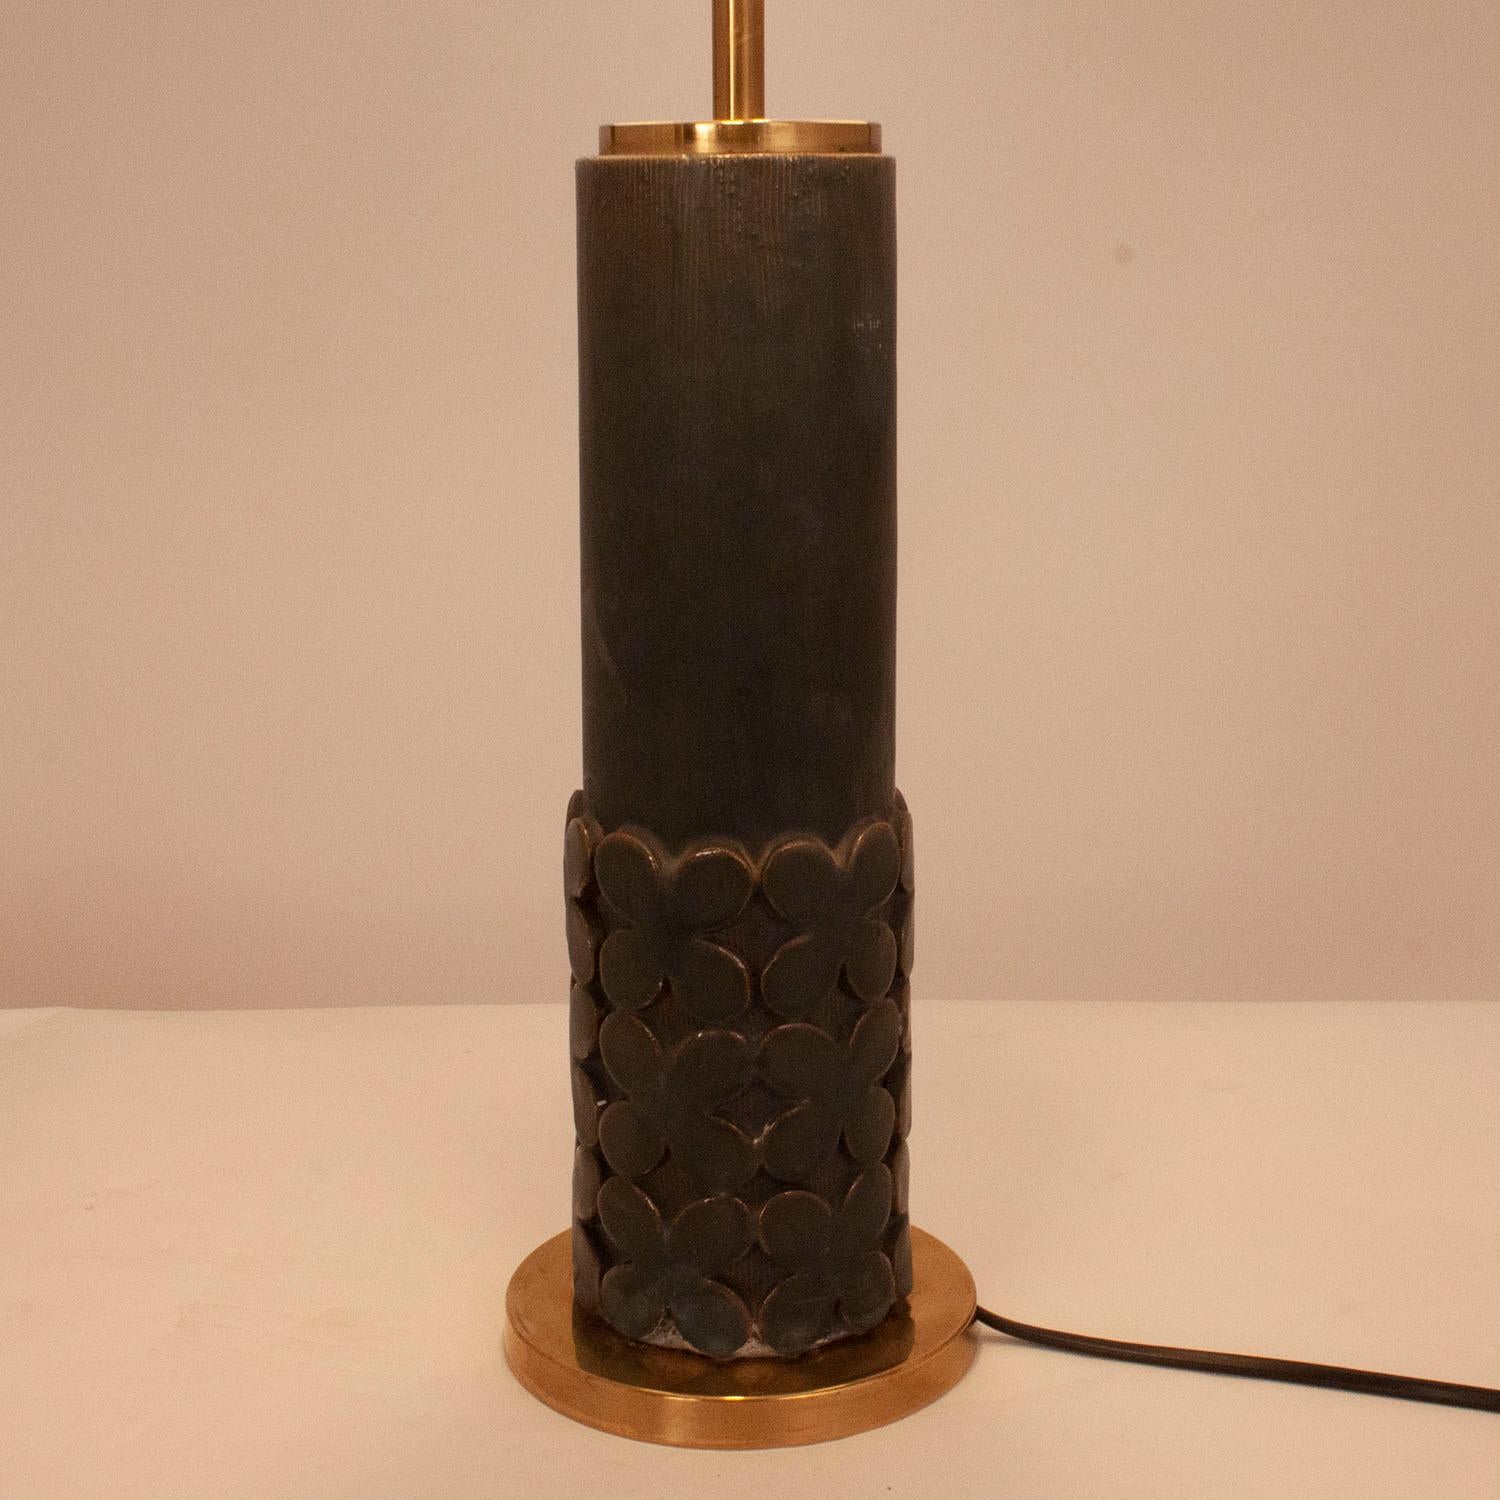 Late 20th Century Jordi Vilanova Table Lamp, Brass and Ceramic, Spain 1970s, Dark Green